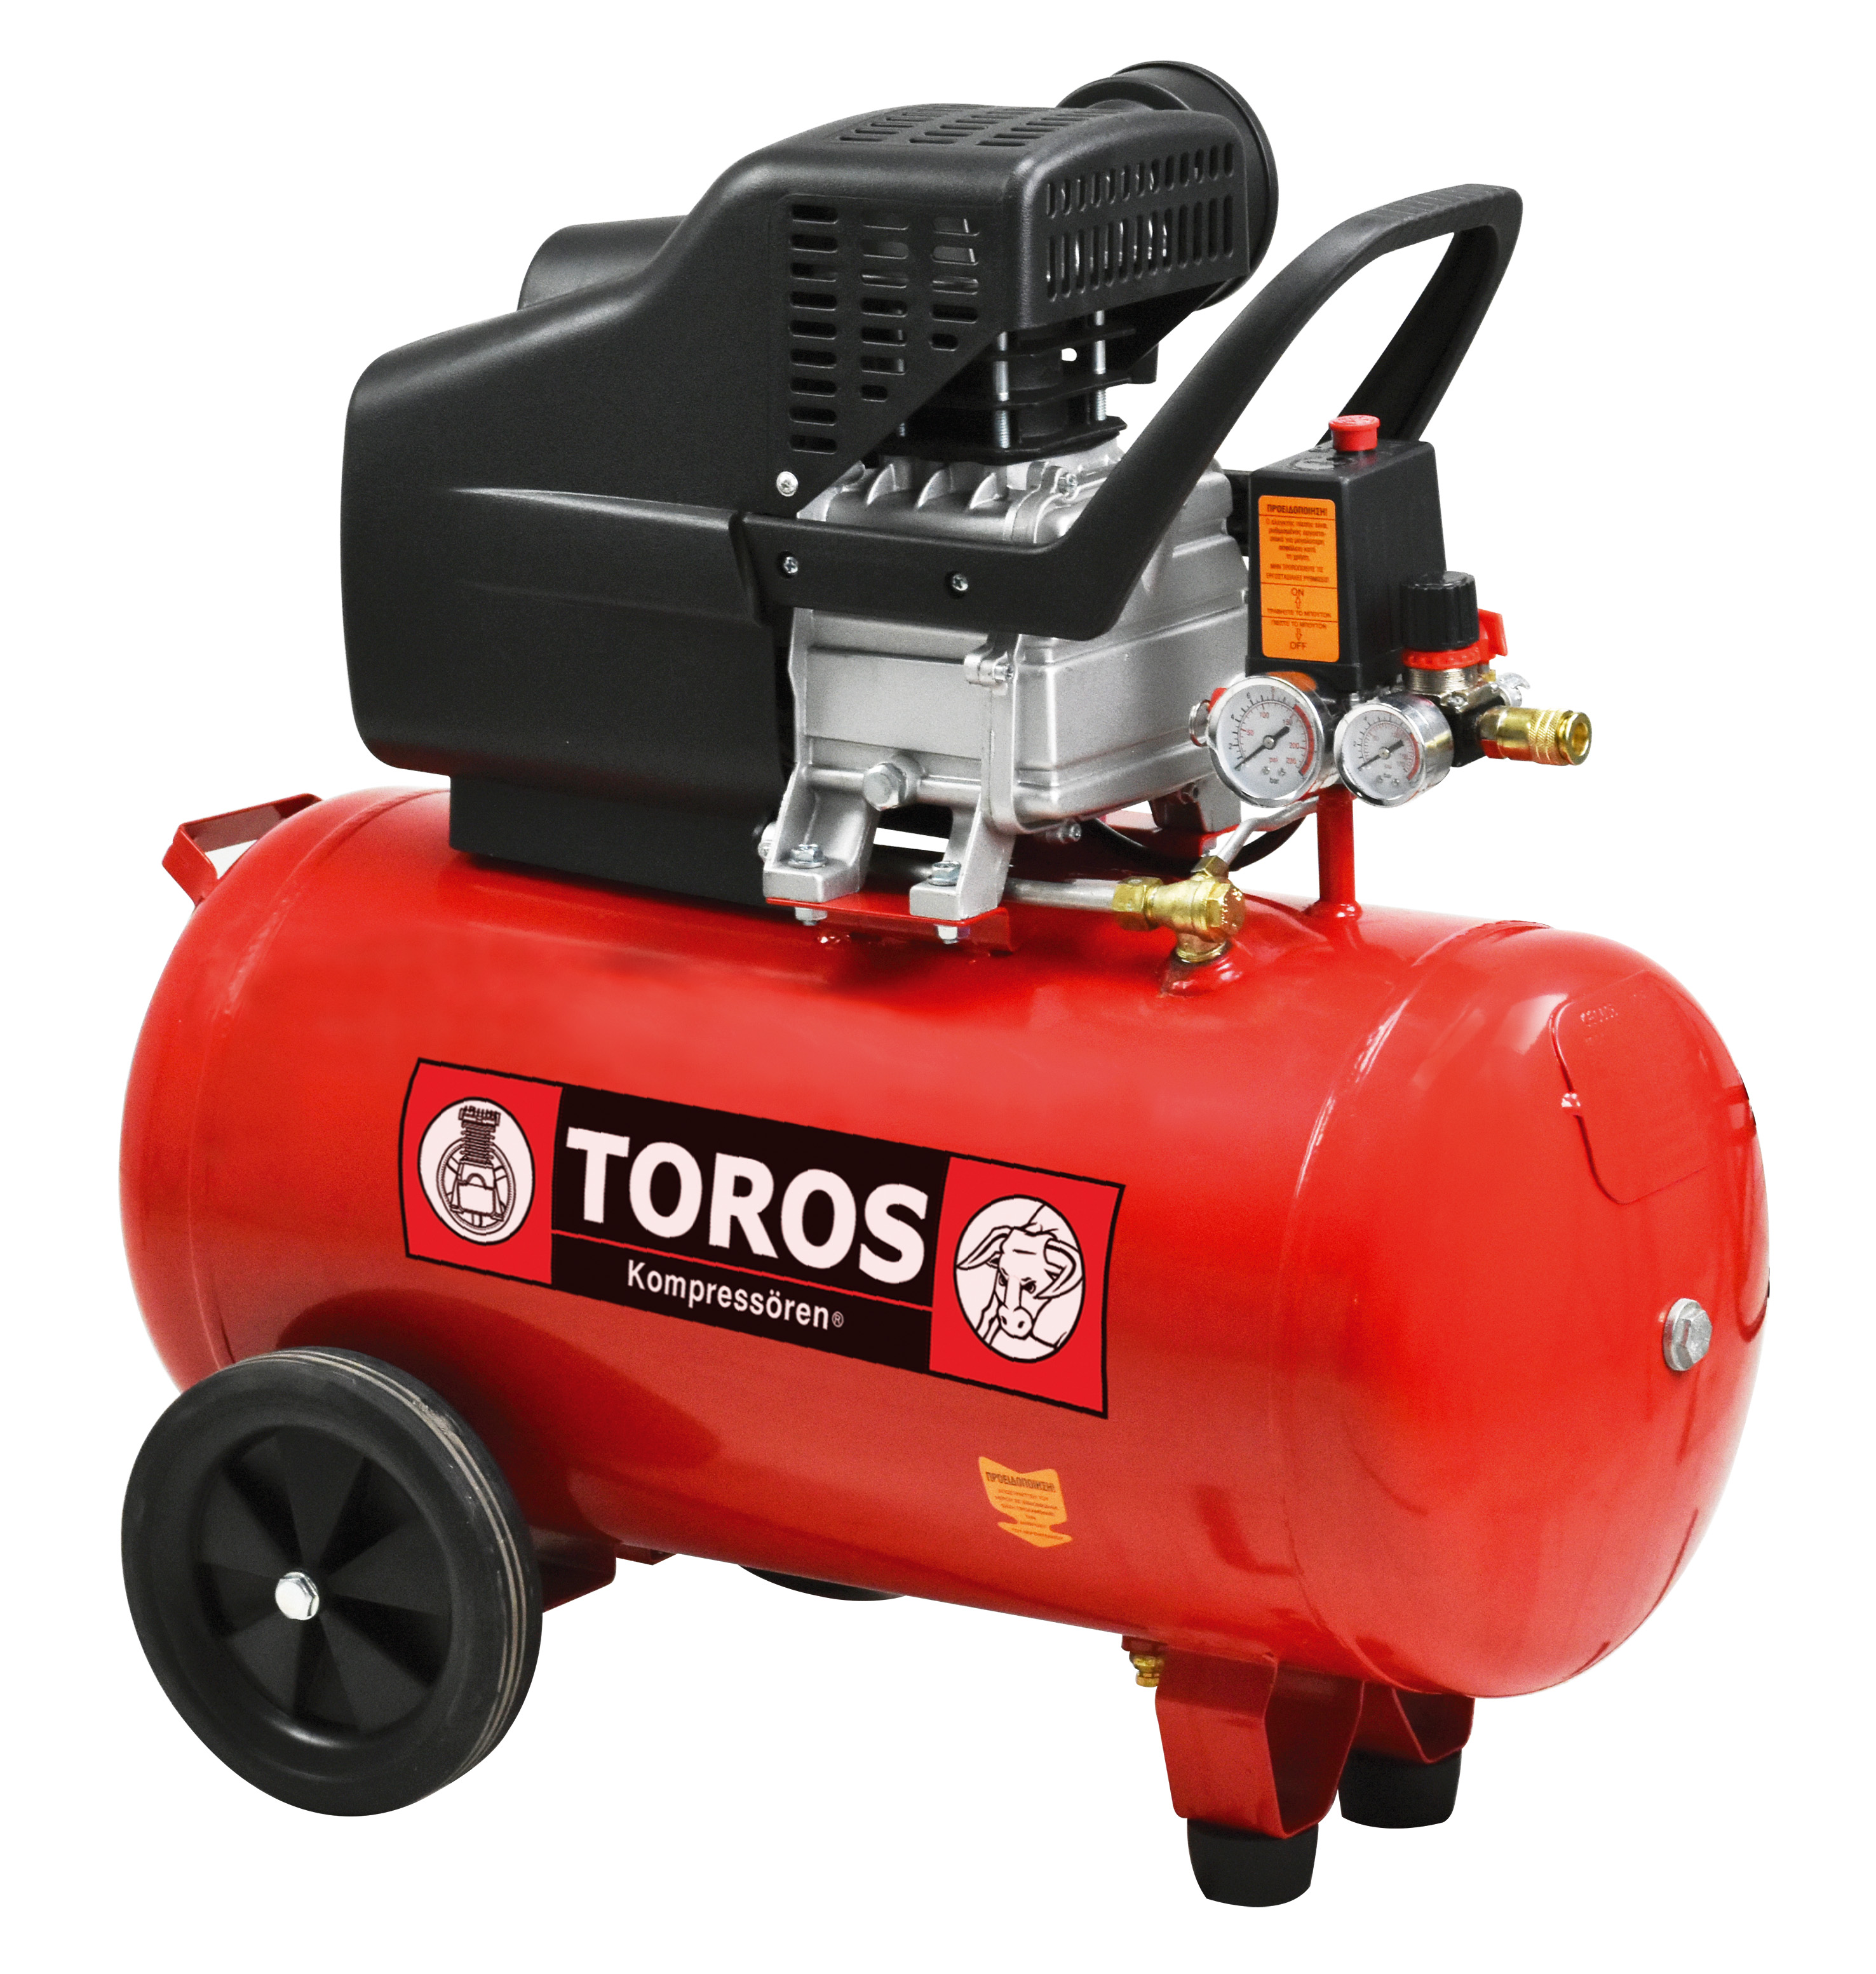 Single Block Oil Air Compressor 50Lt/2.5HP Toros